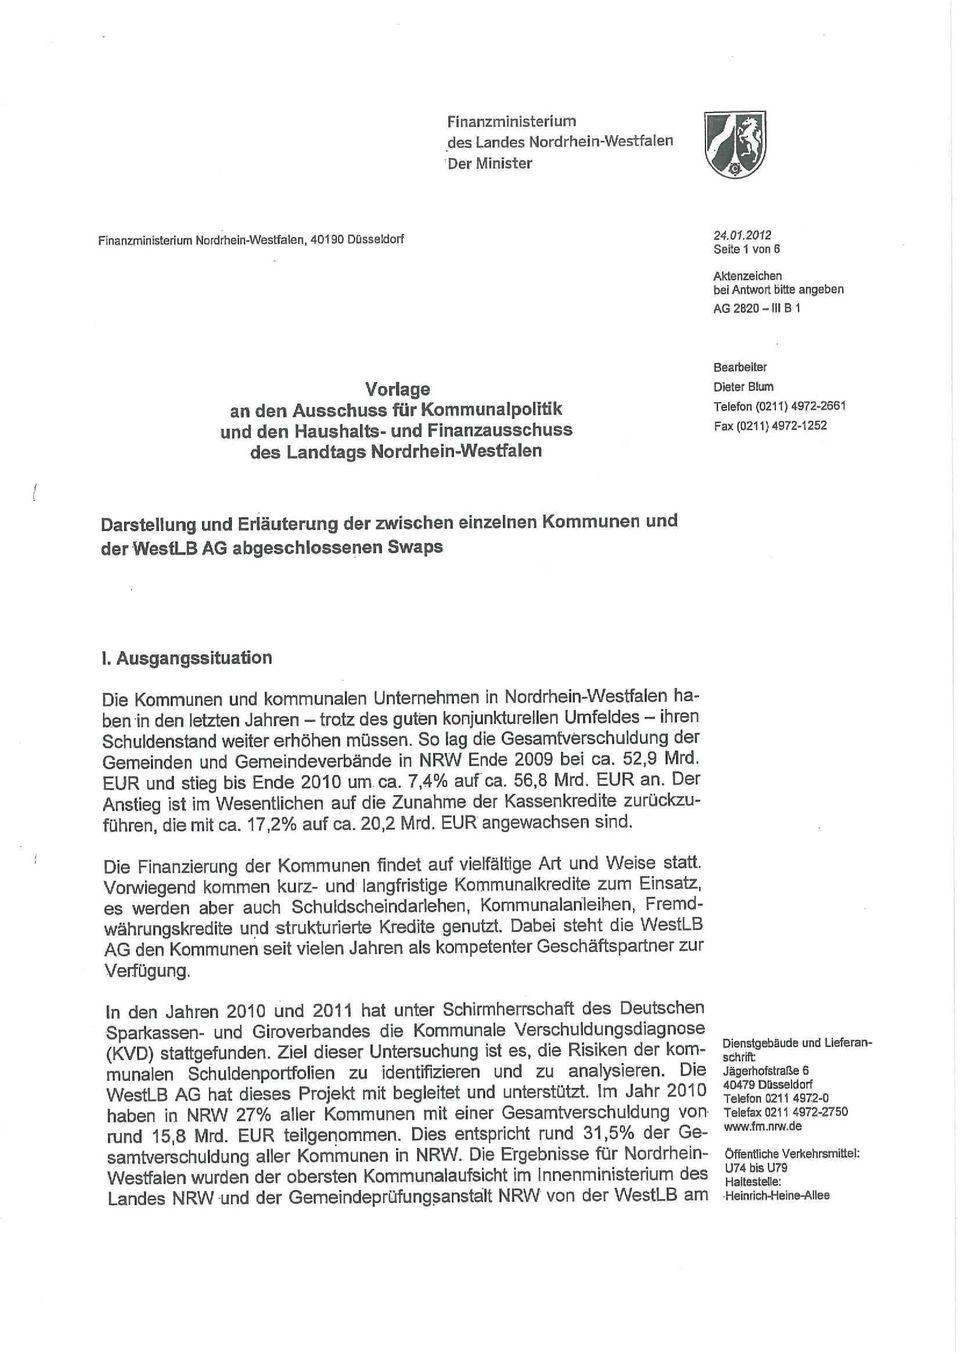 2012 Seite 1 von 6 Aktenzeichen bei Antwort bitte angeben AG 2820-III B1 Vorlage an den Ausschuss für Kommunalpolitik und den Haushalts- und Finanzausschuss des Landtags Nordrhein-Westfalen